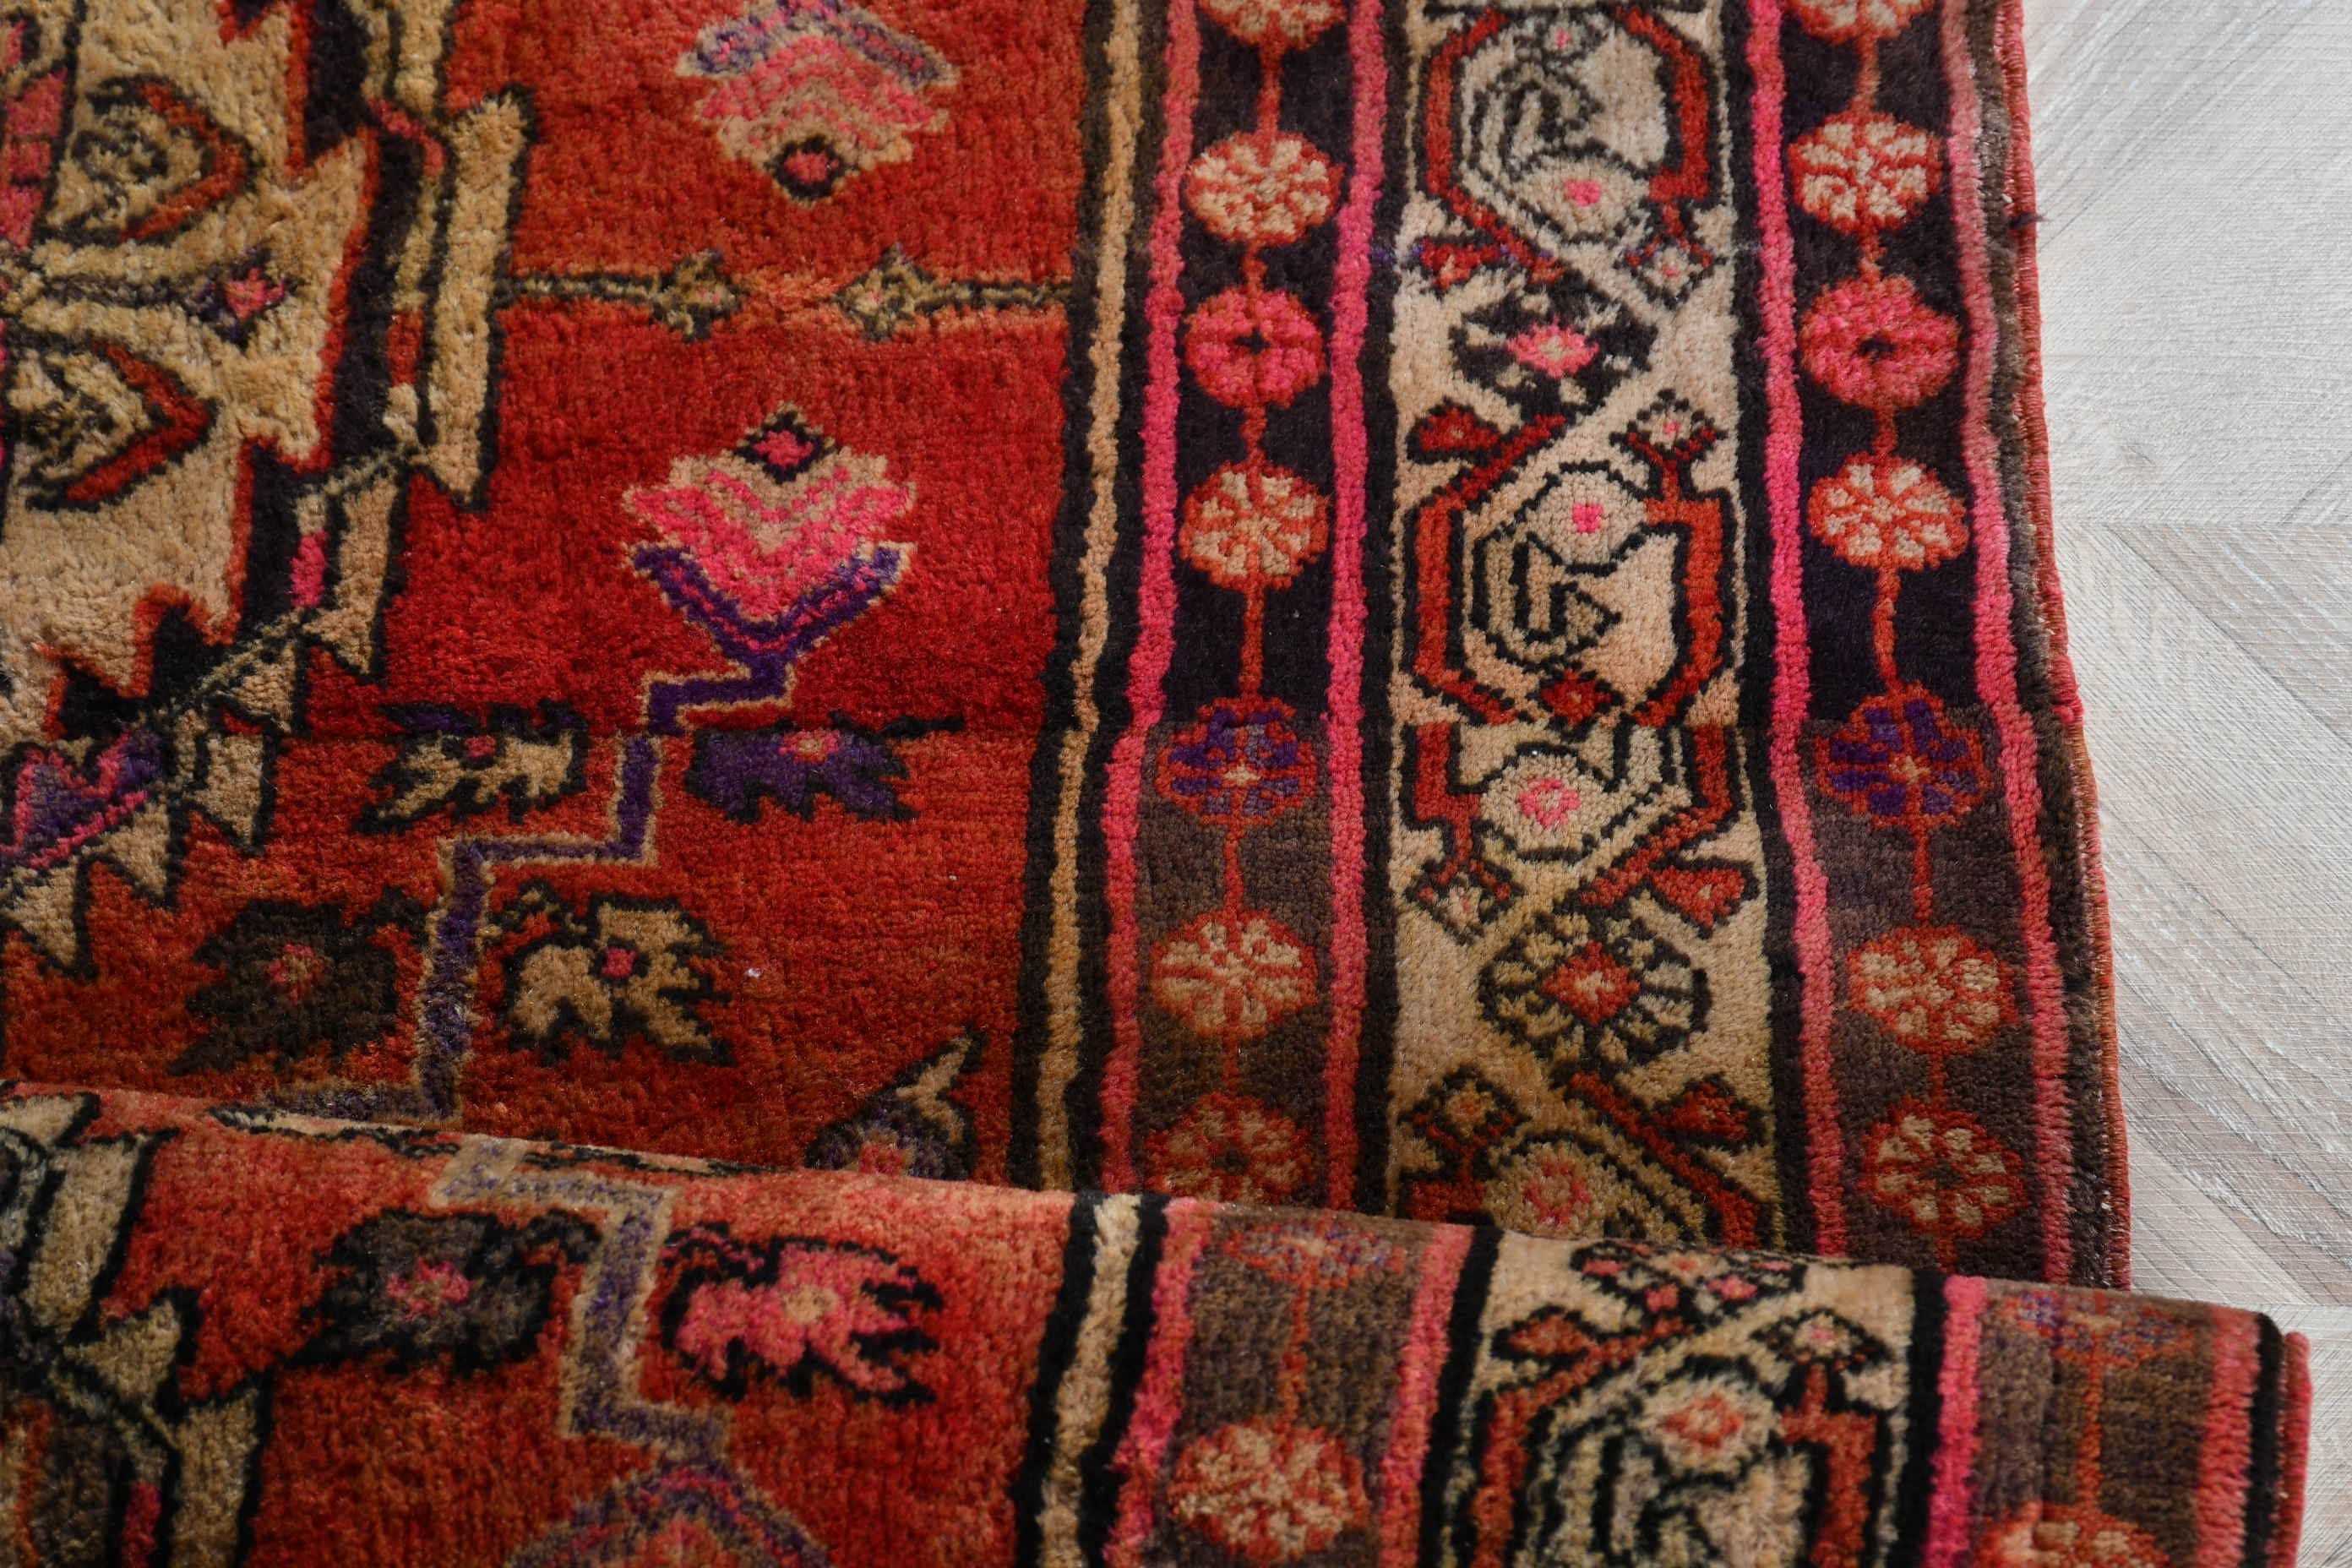 Nursery Rug, Living Room Rug, Cool Rug, Red Cool Rugs, 3.8x7.5 ft Area Rugs, Rugs for Bedroom, Vintage Rugs, Moroccan Rugs, Turkish Rug